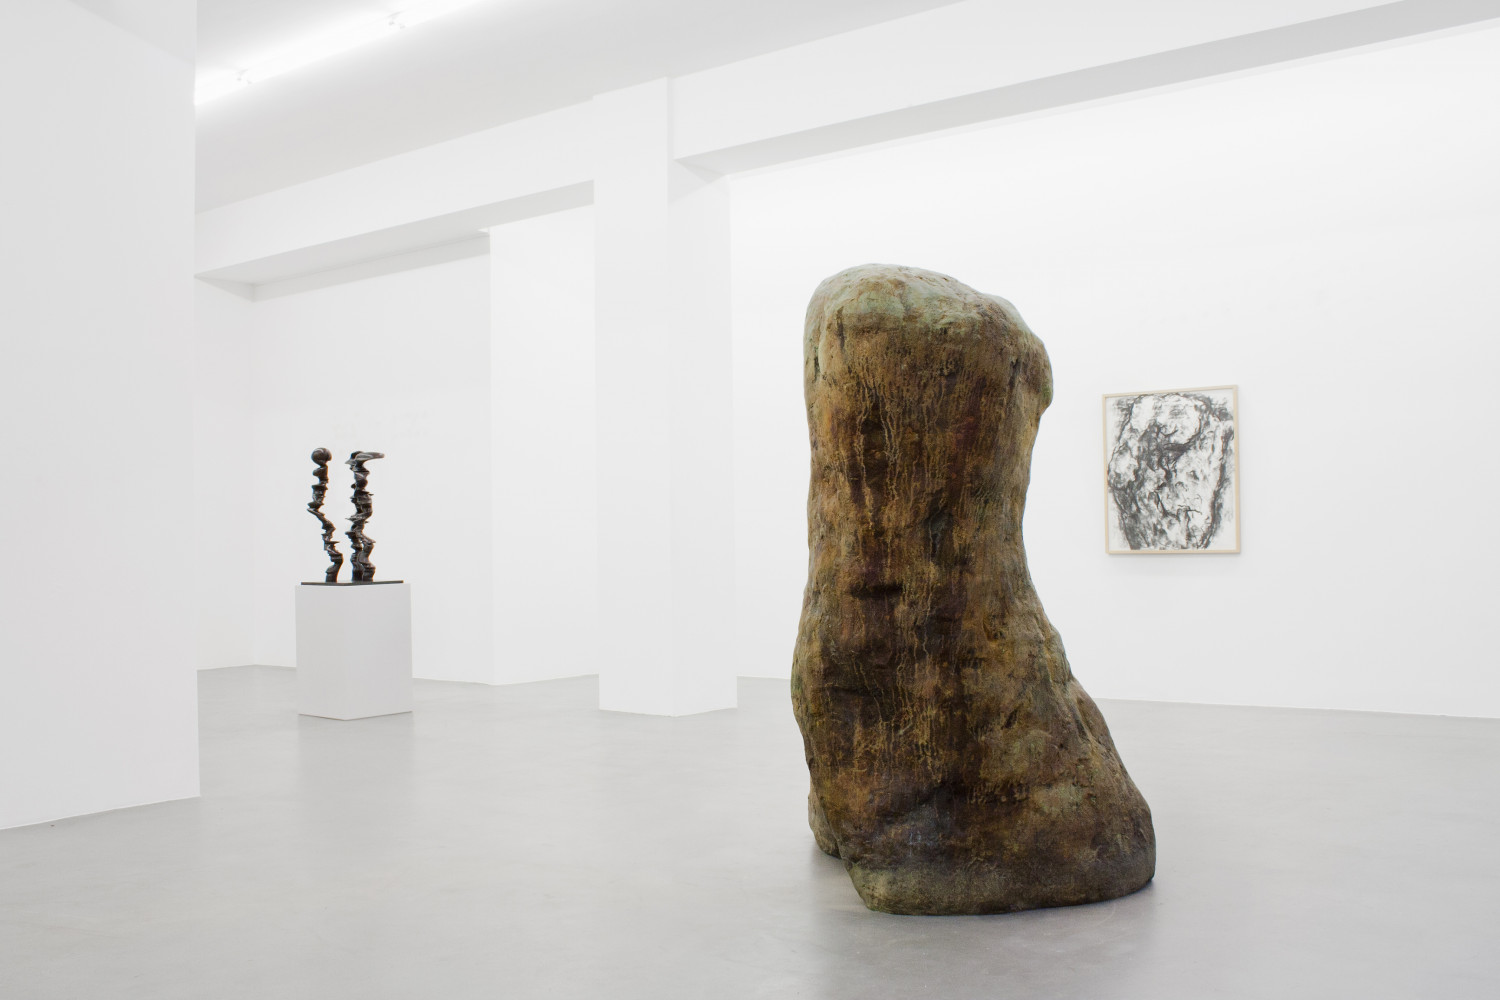 Tony Cragg, William Tucker, ‘Figure – Tony Cragg - Martin Disler - Medardo Rosso - William Tucker - Rebecca Warren’, Installation view, Buchmann Galerie, 2015